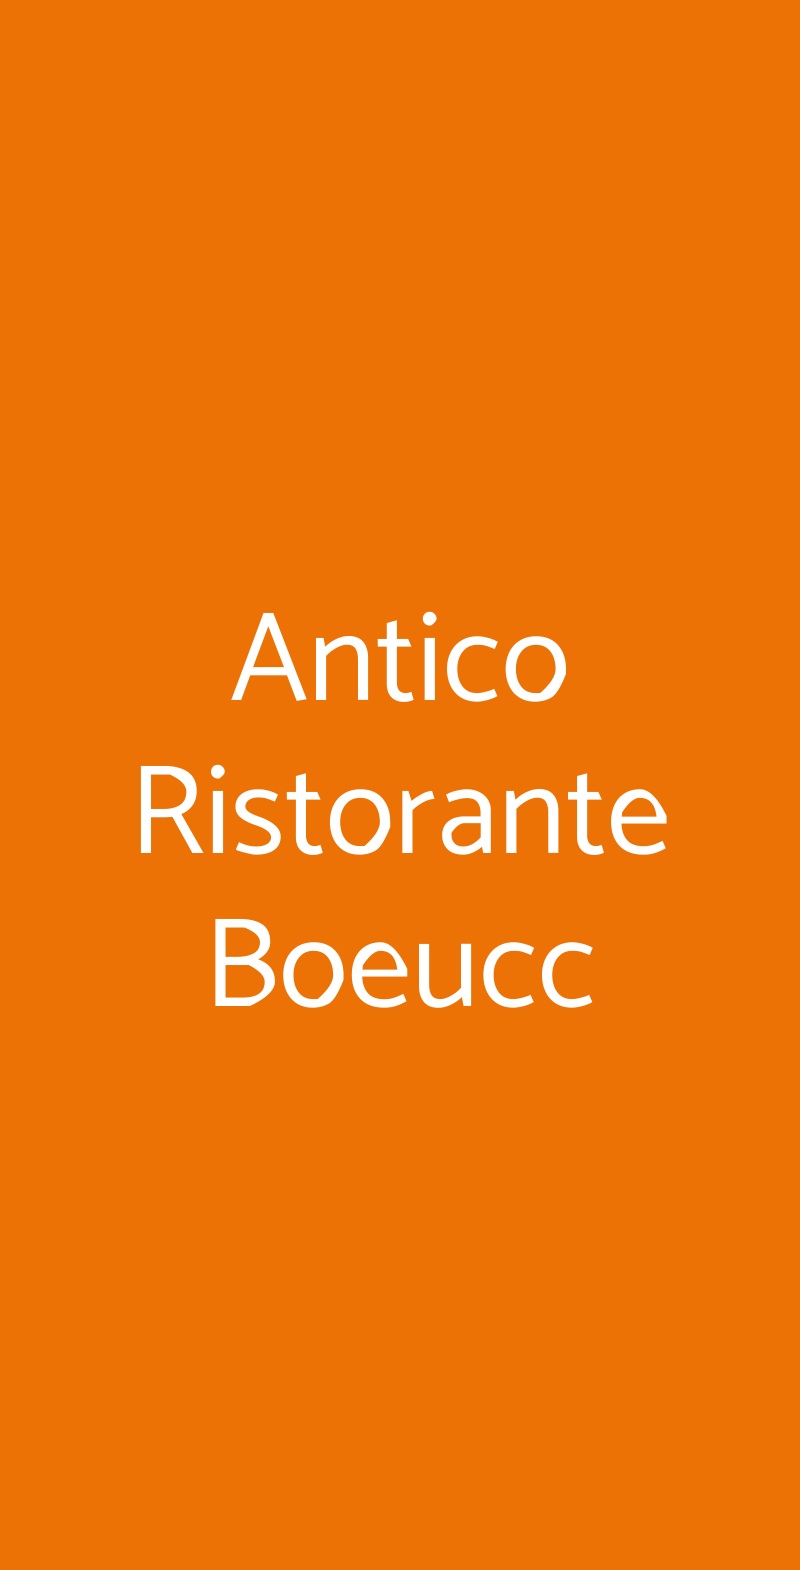 Antico Ristorante Boeucc Milano menù 1 pagina